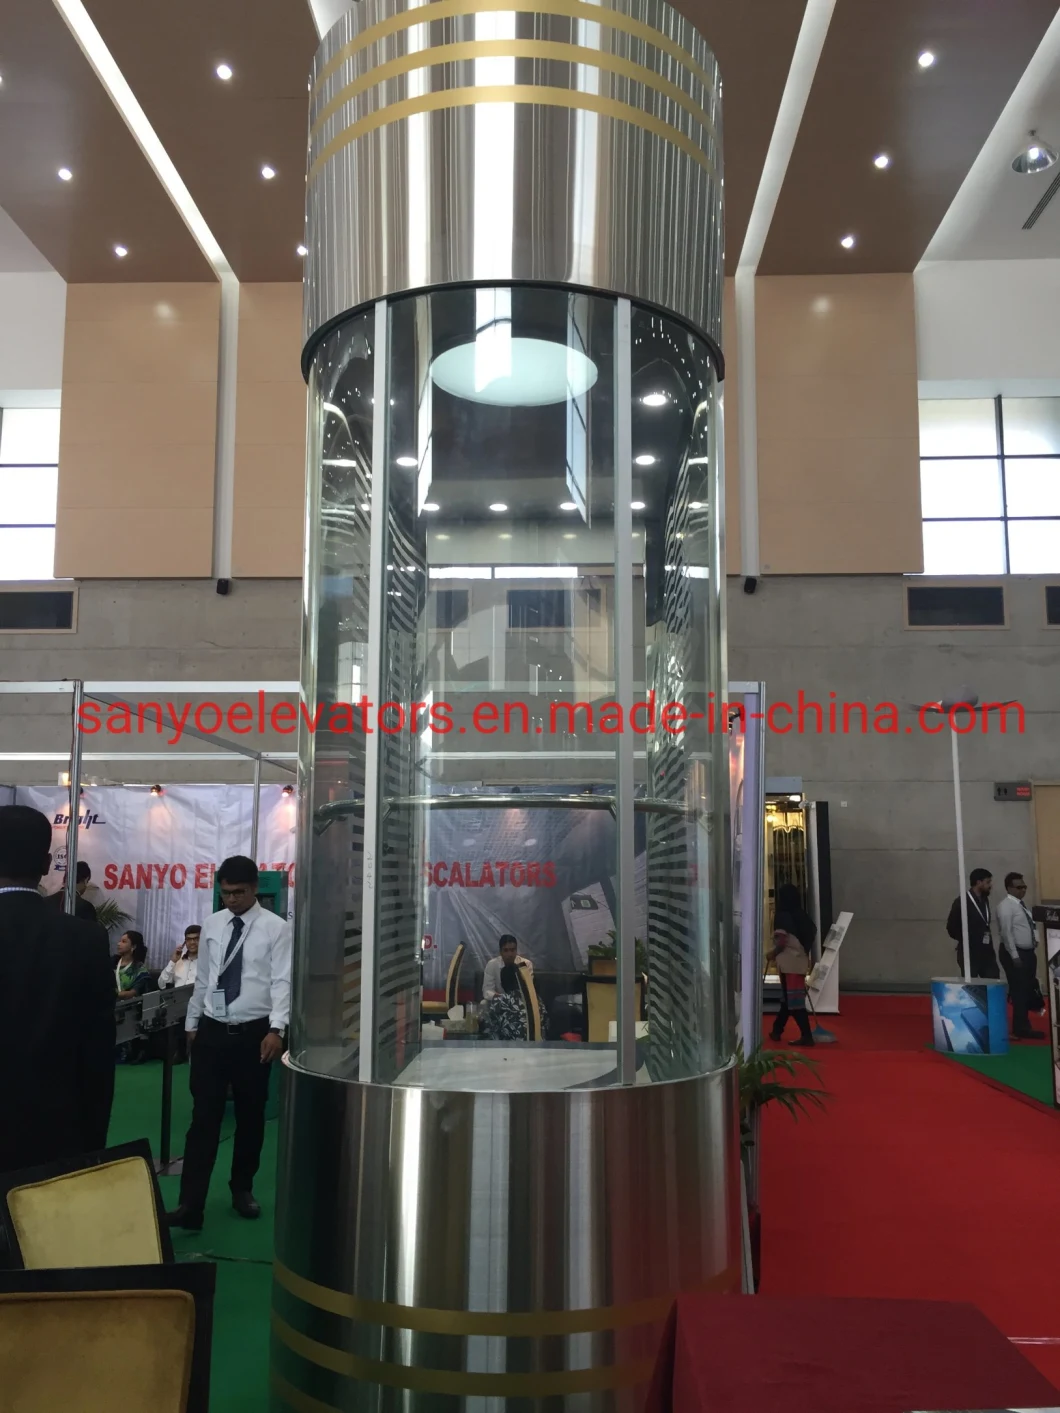 Elevator manufacturer passenger commercial elevator dimensions